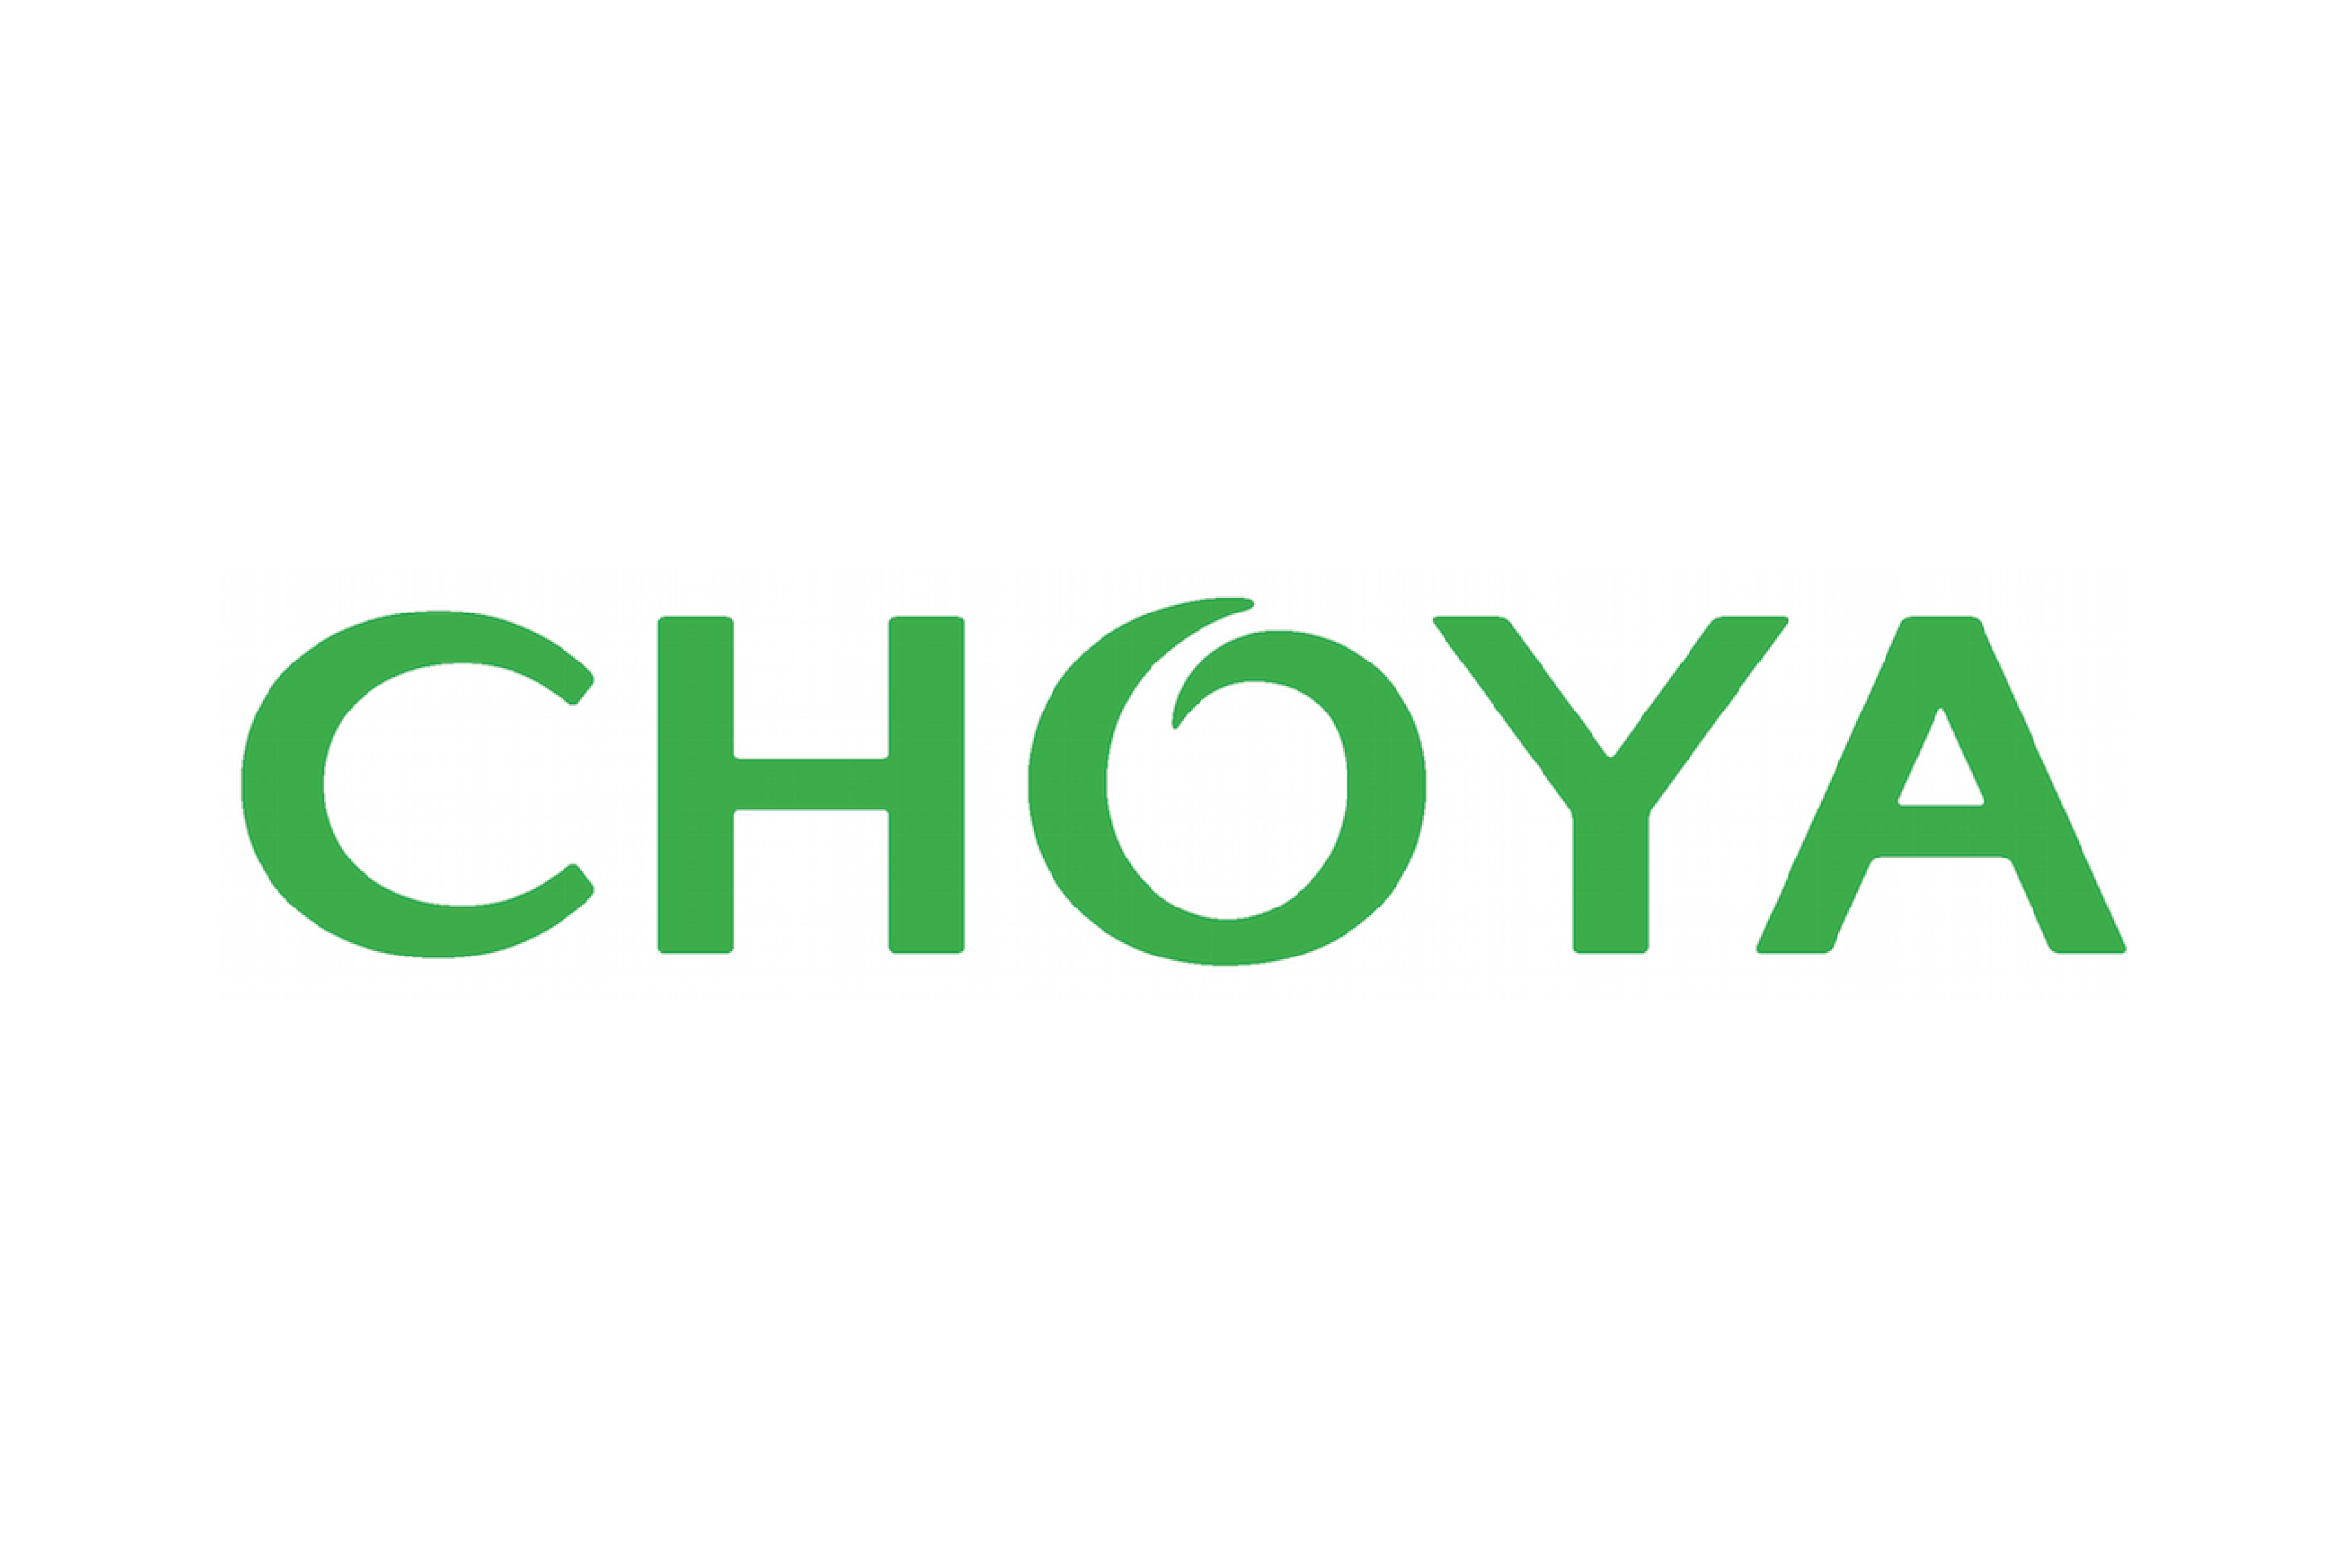 choya-01.png